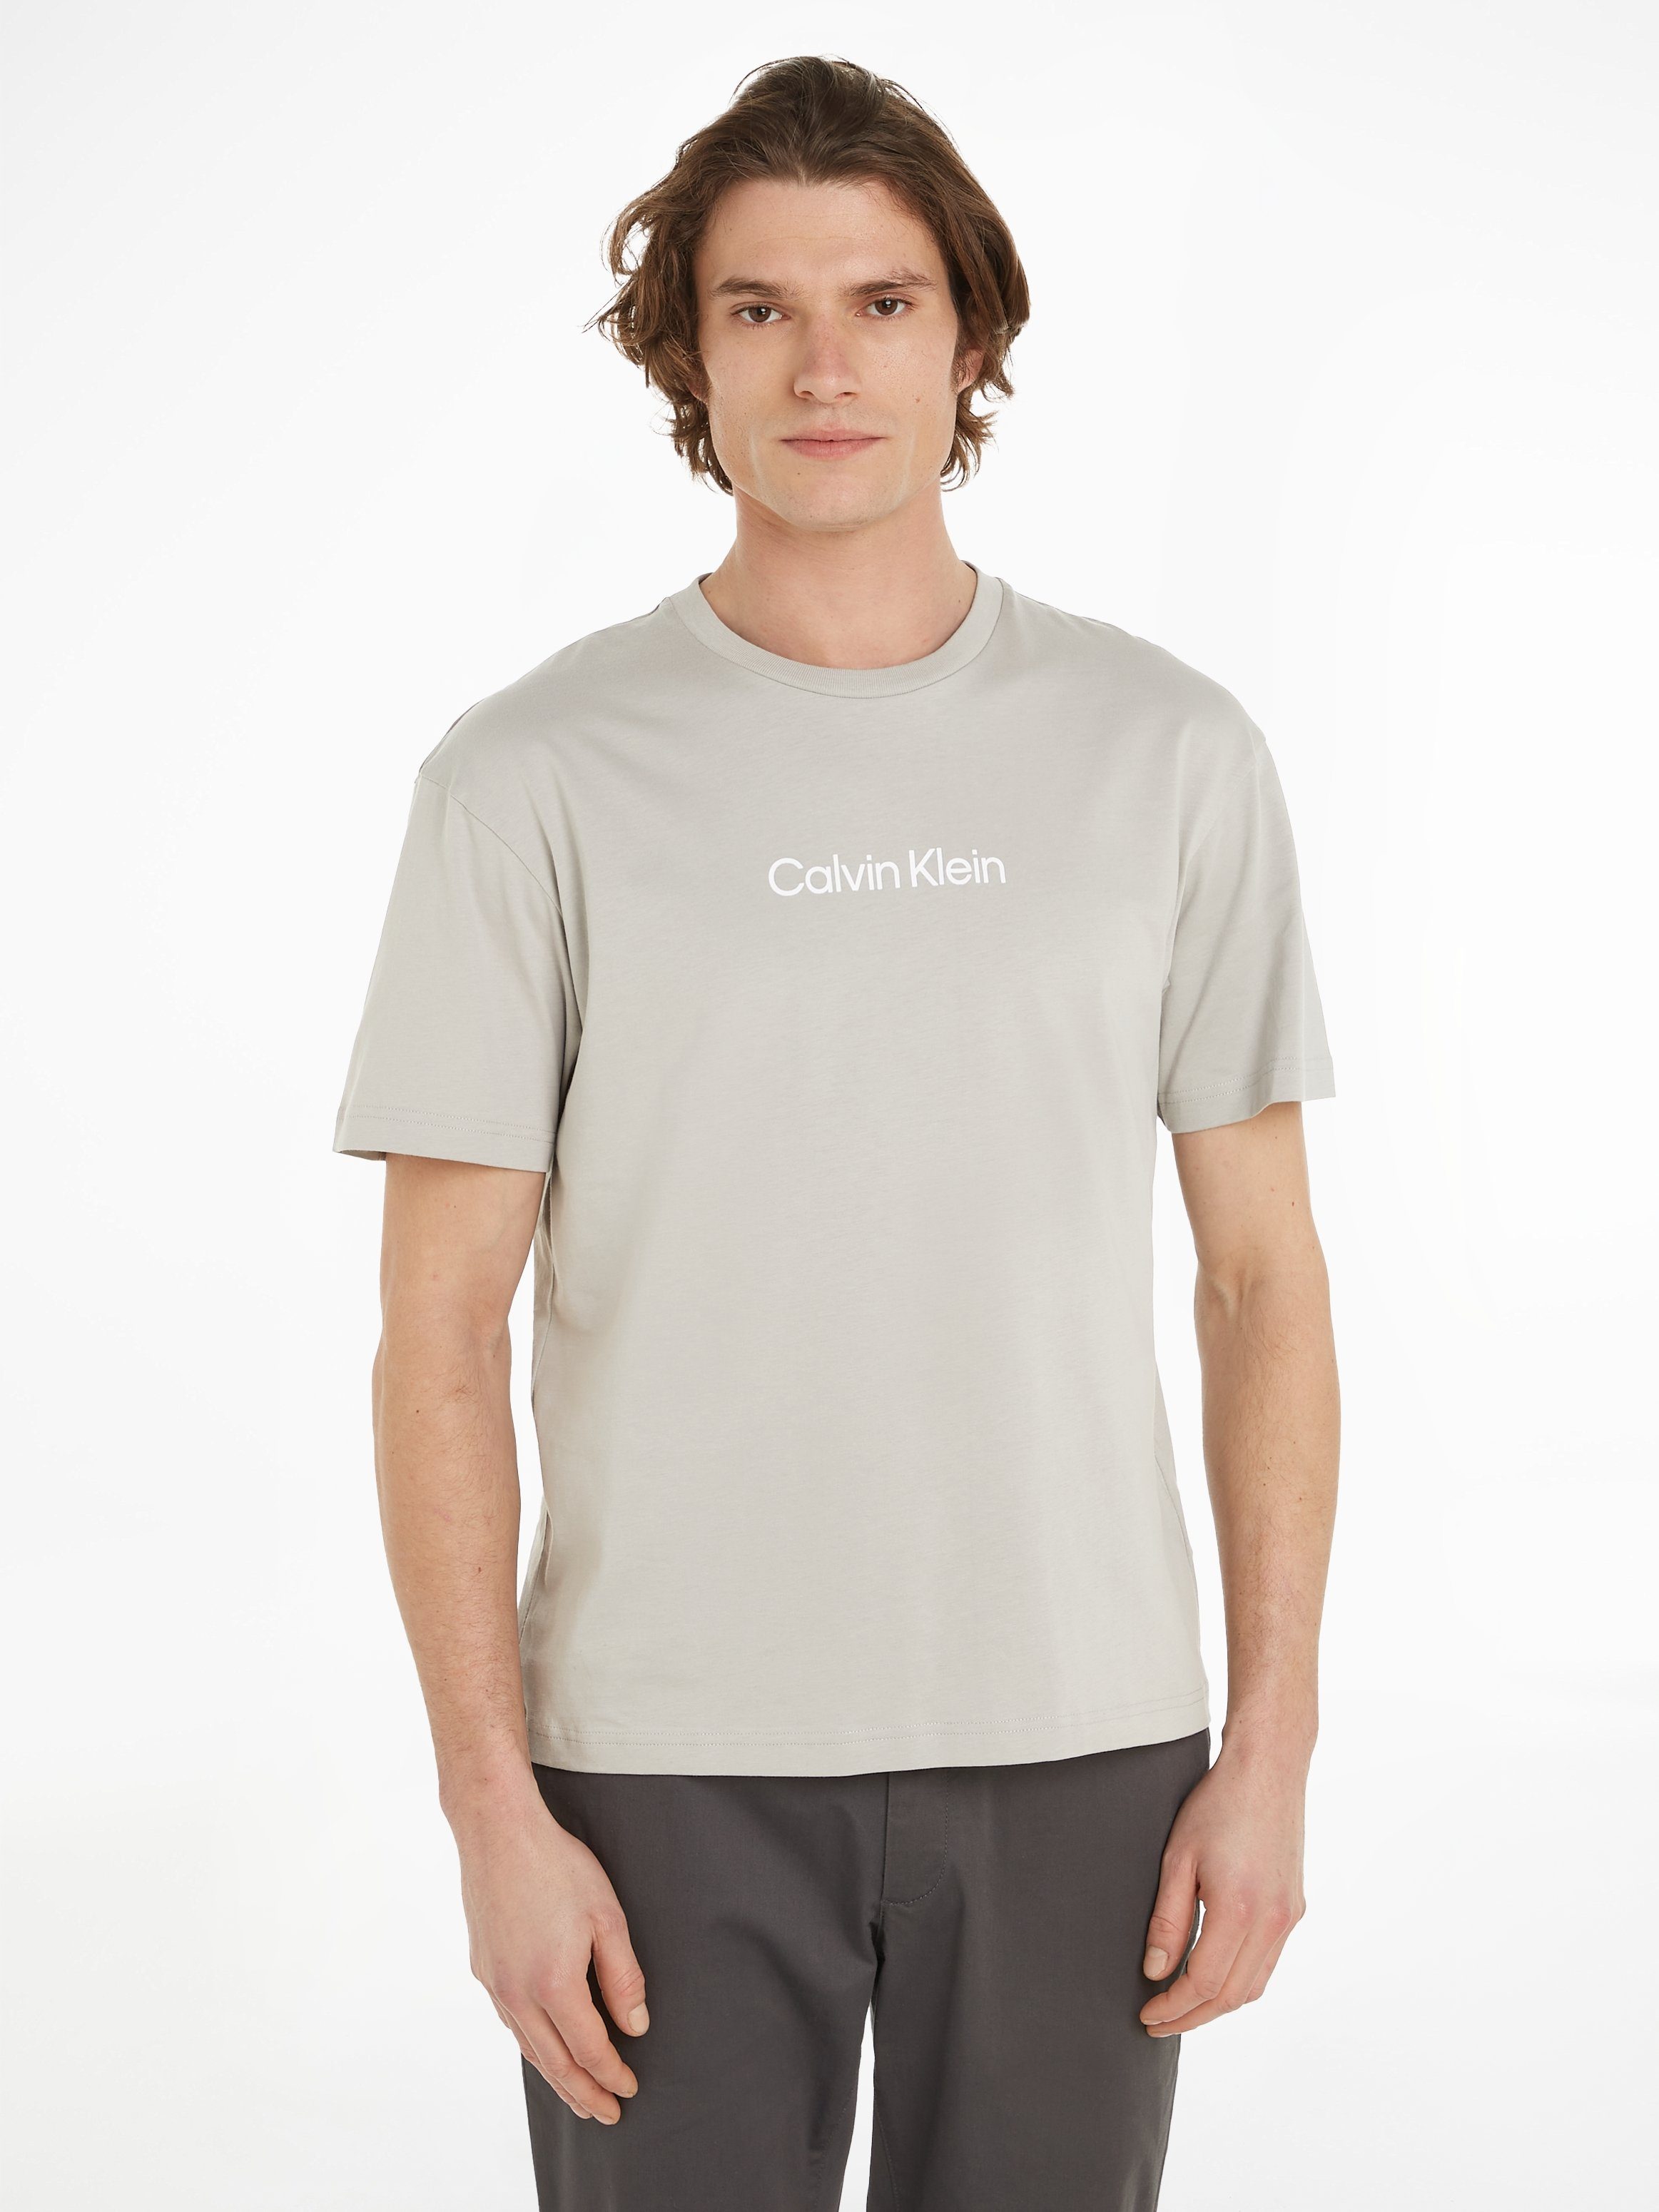 Calvin Klein T-Shirt HERO LOGO COMFORT T-SHIRT mit aufgedrucktem Markenlabel Ghost Gray